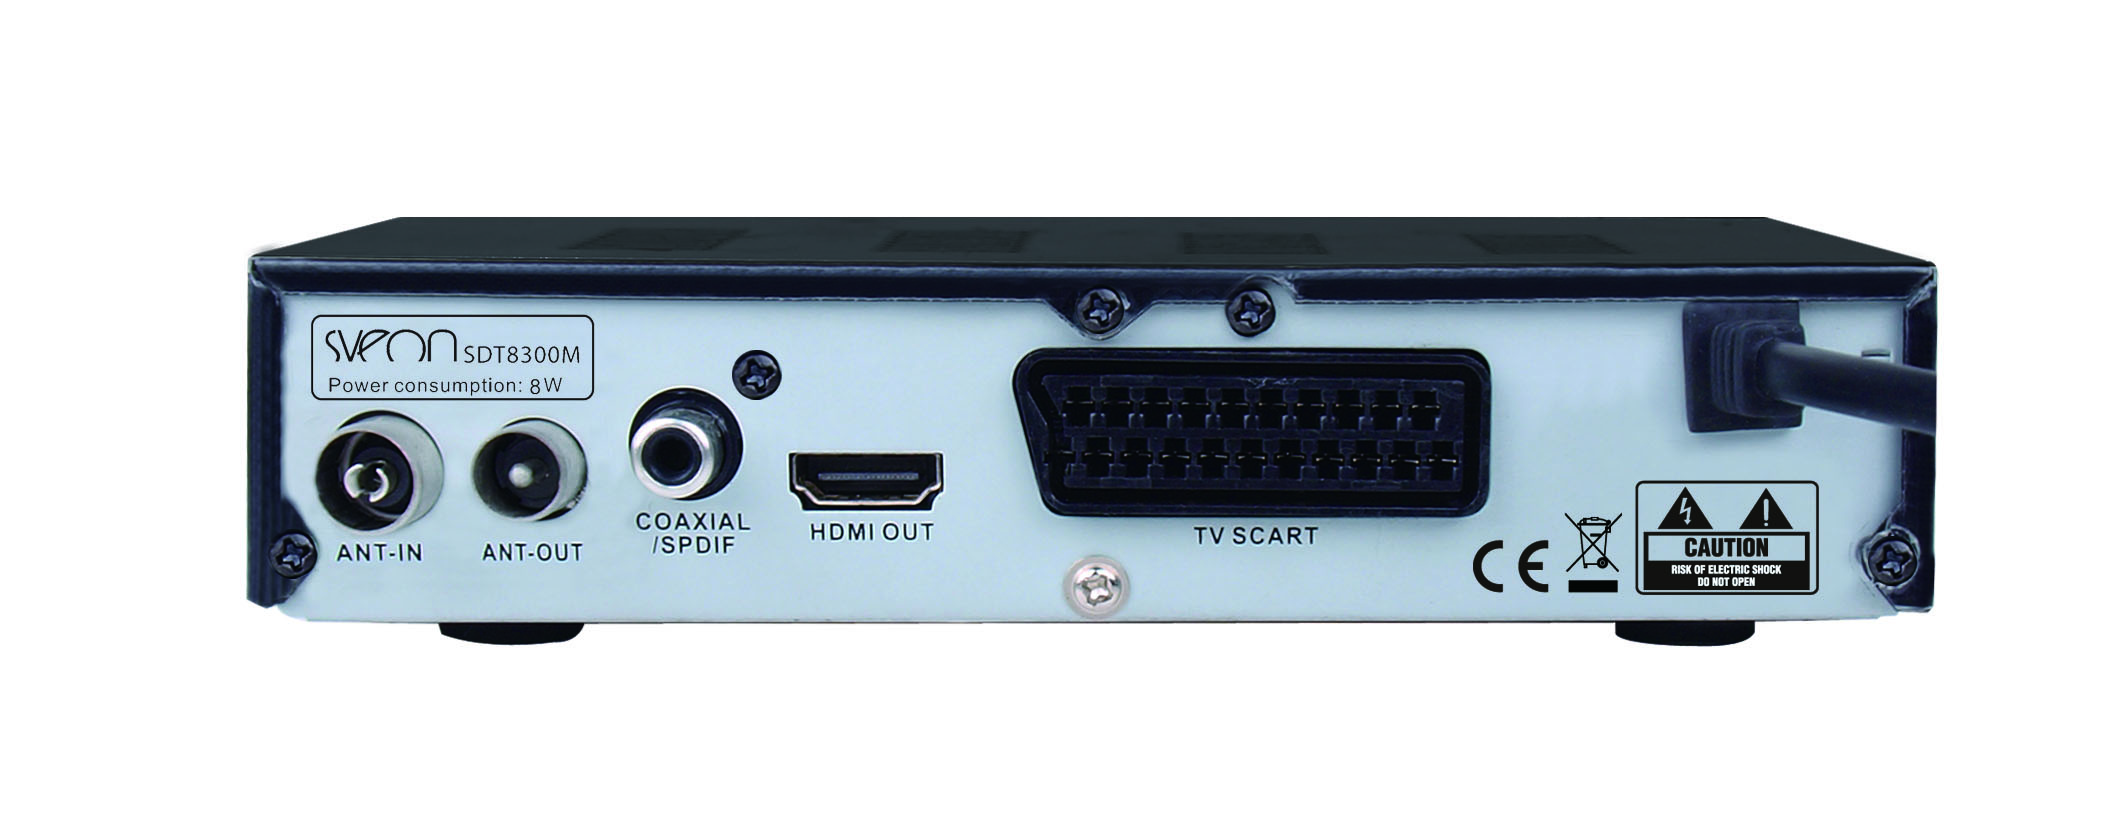 Sintonizador y Grabador TDT HD SVEON SDT8300Q9 con reproductor multimedia  MKV